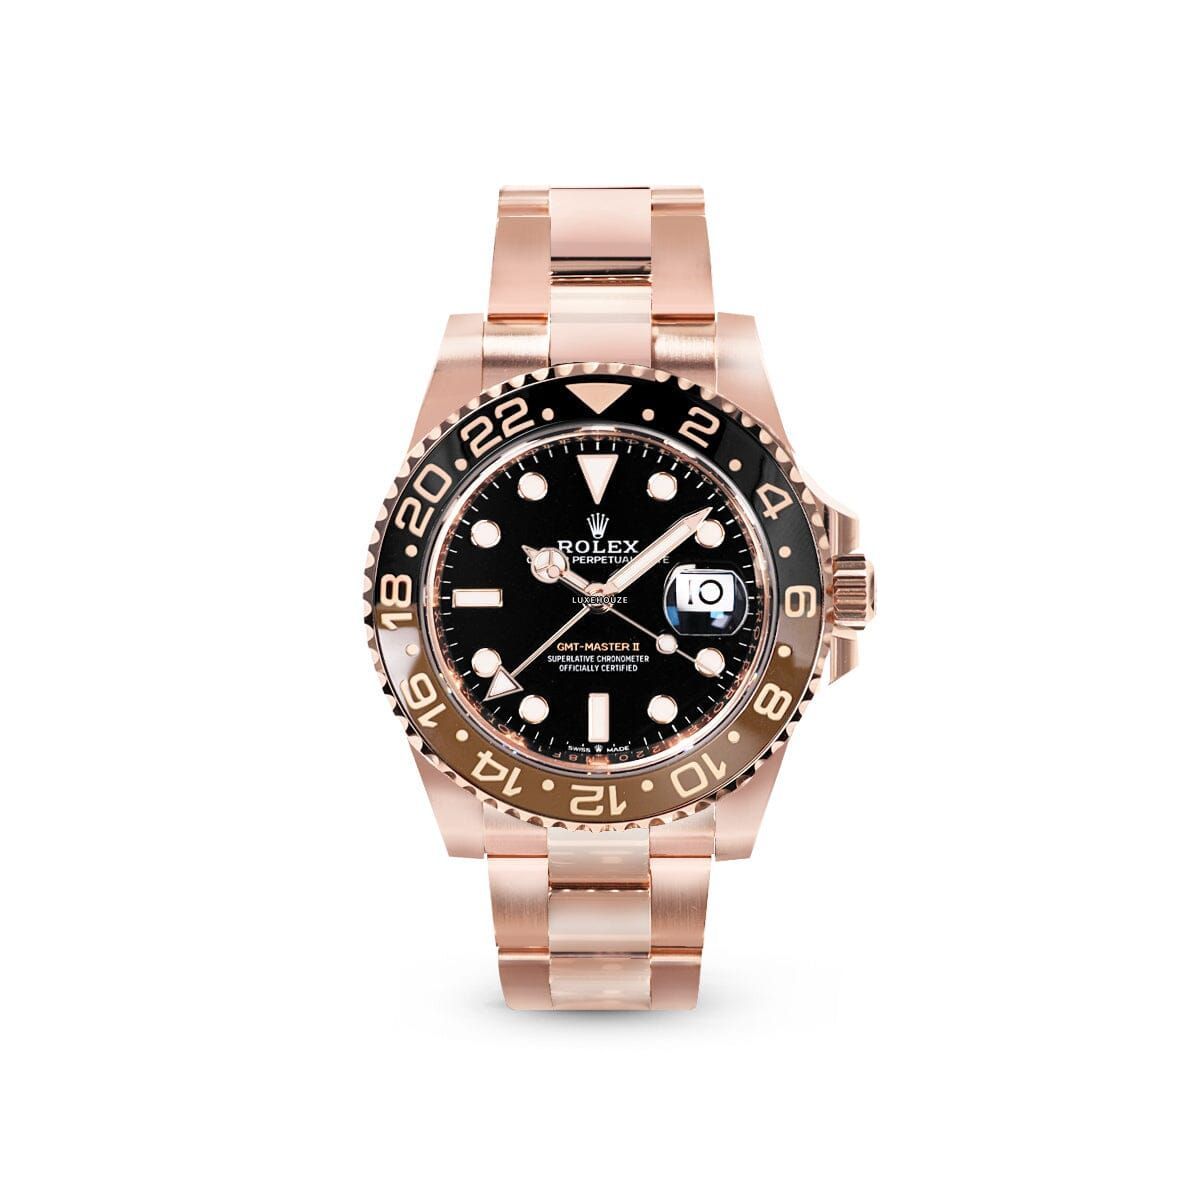 GMT Master II 126715CHNR Black Watches Rolex 